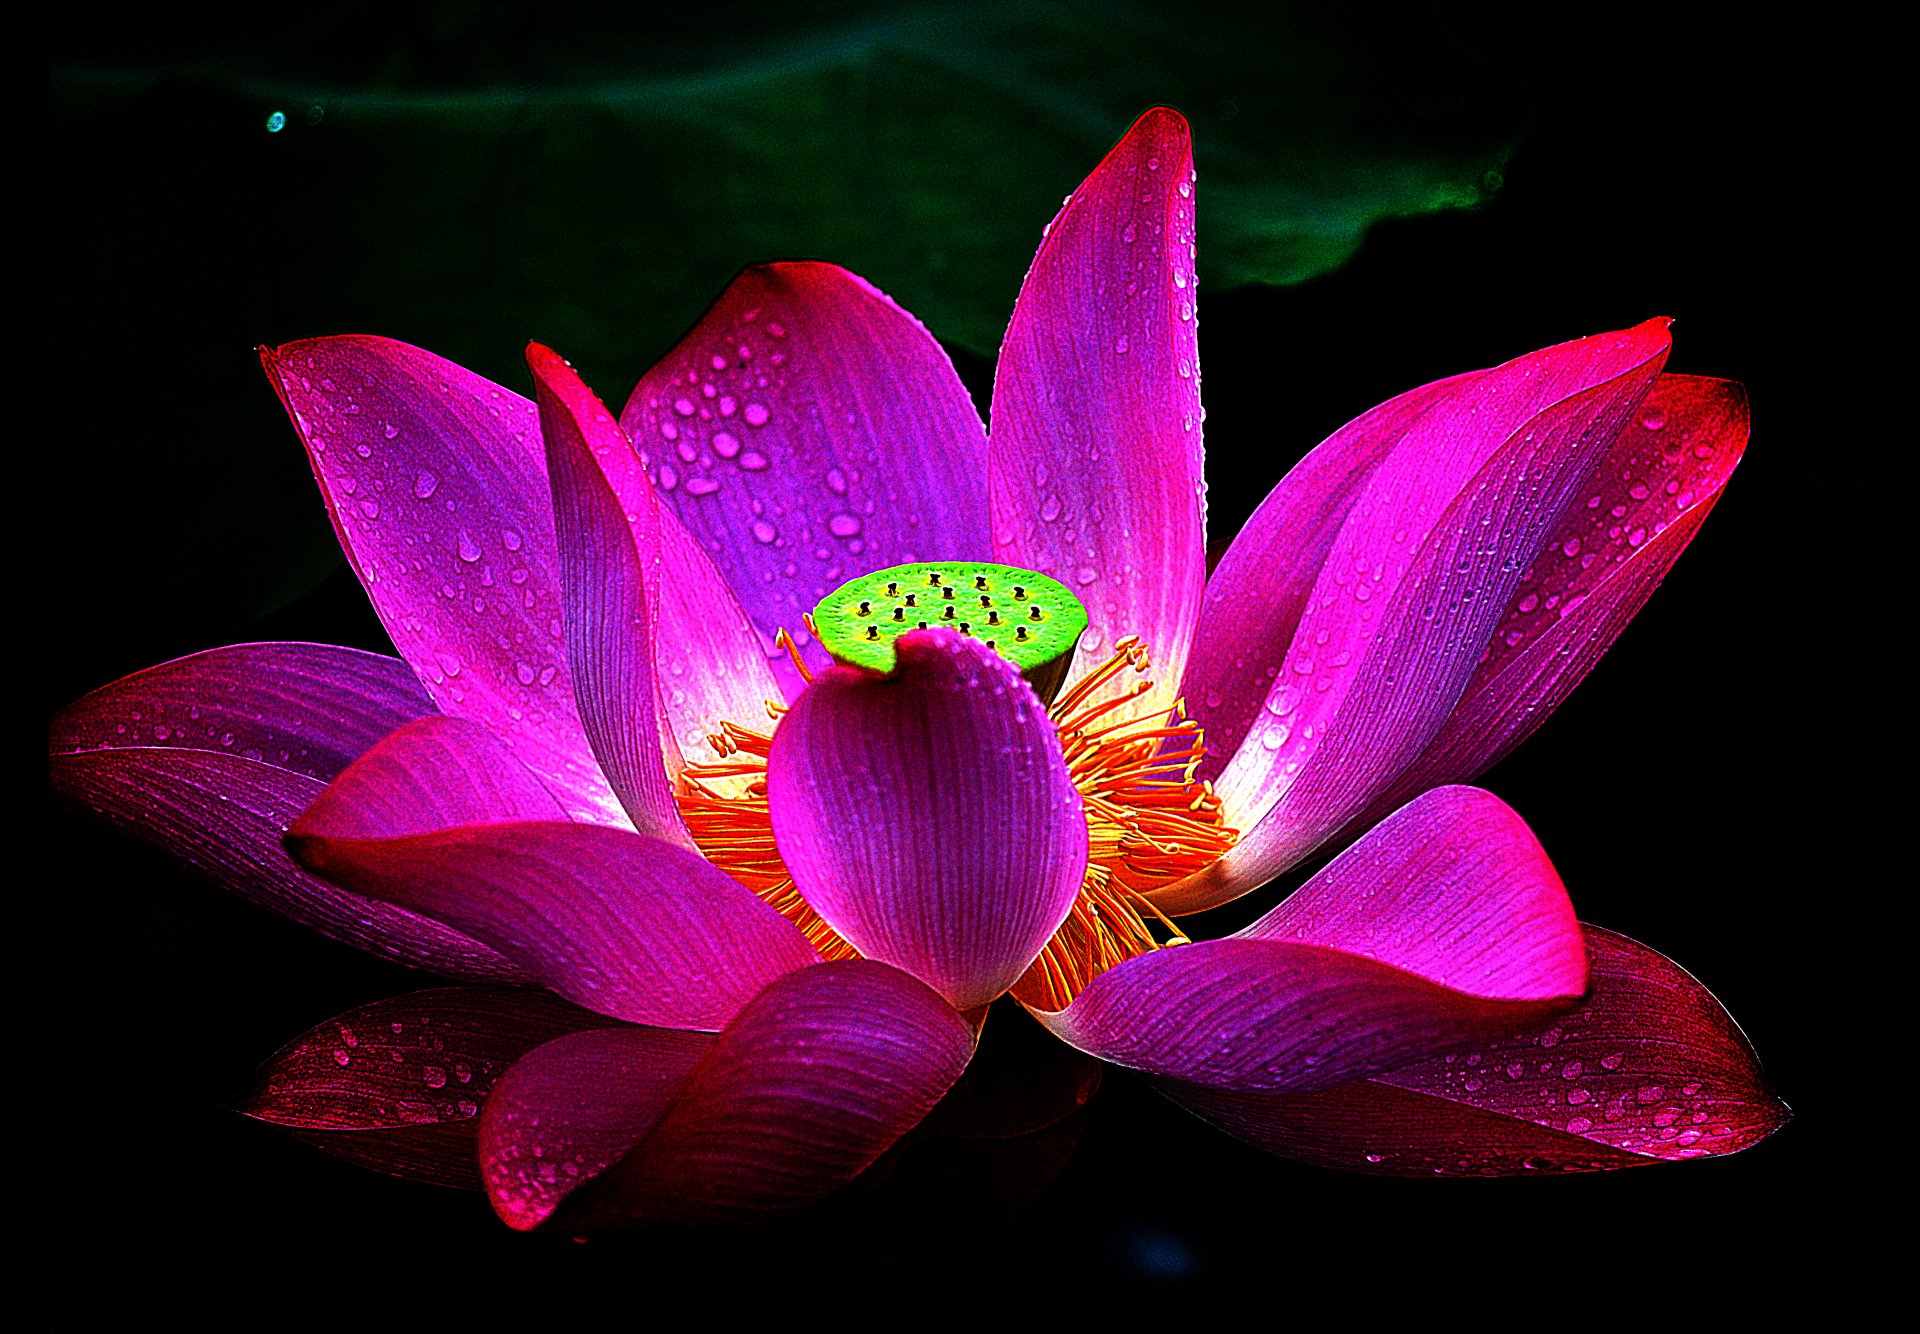 Các bạn có biết rằng chúng ta có thể thưởng thức vẻ đẹp tuyệt vời của hoa sen trong 4k Ultra HD không? Hãy cùng chiêm ngưỡng hình ảnh các bông sen lung linh, rực rỡ sắc màu với chất lượng hình ảnh tuyệt vời!